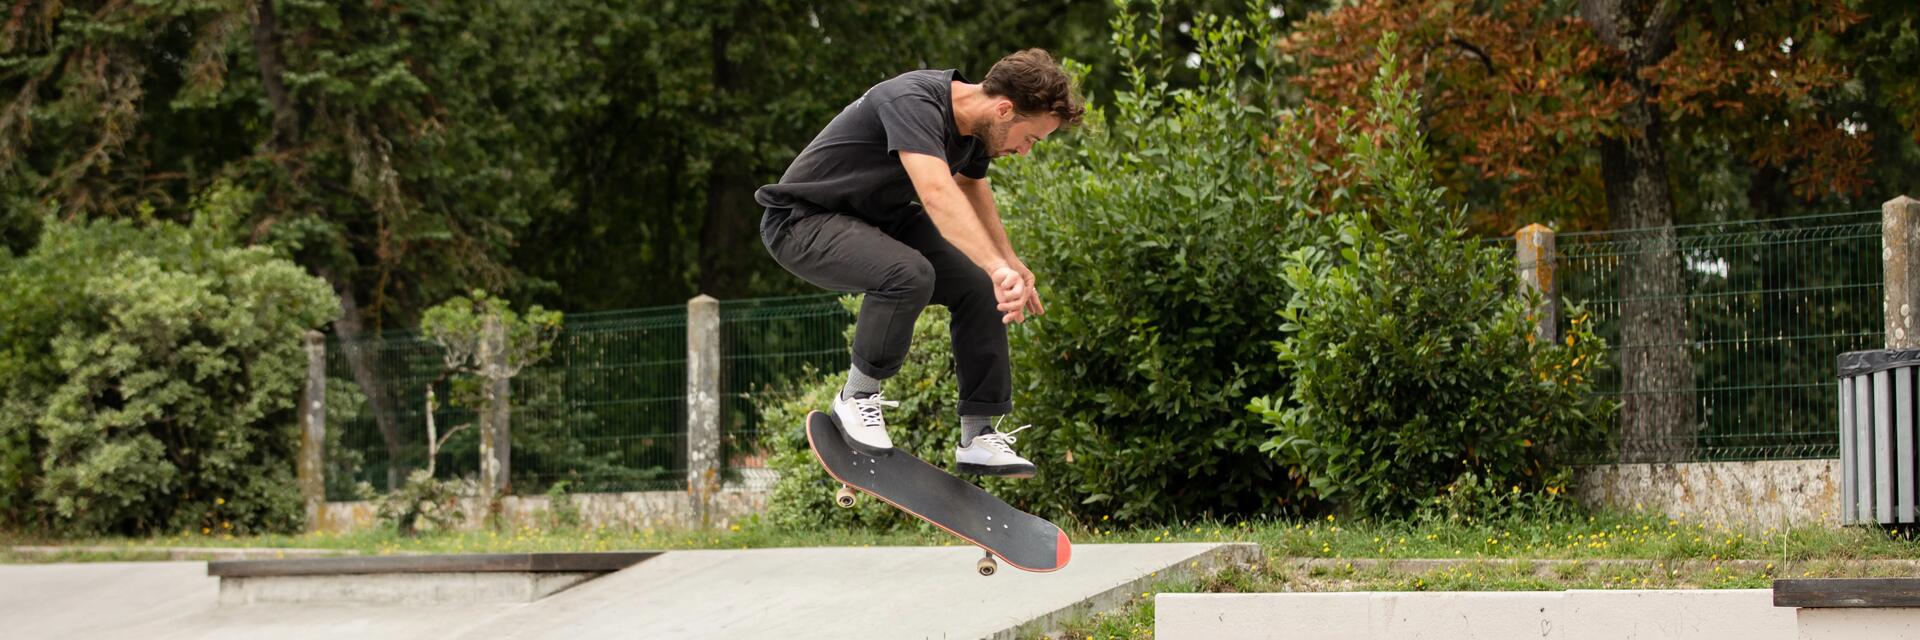 Hombre haciendo practicando skateboard